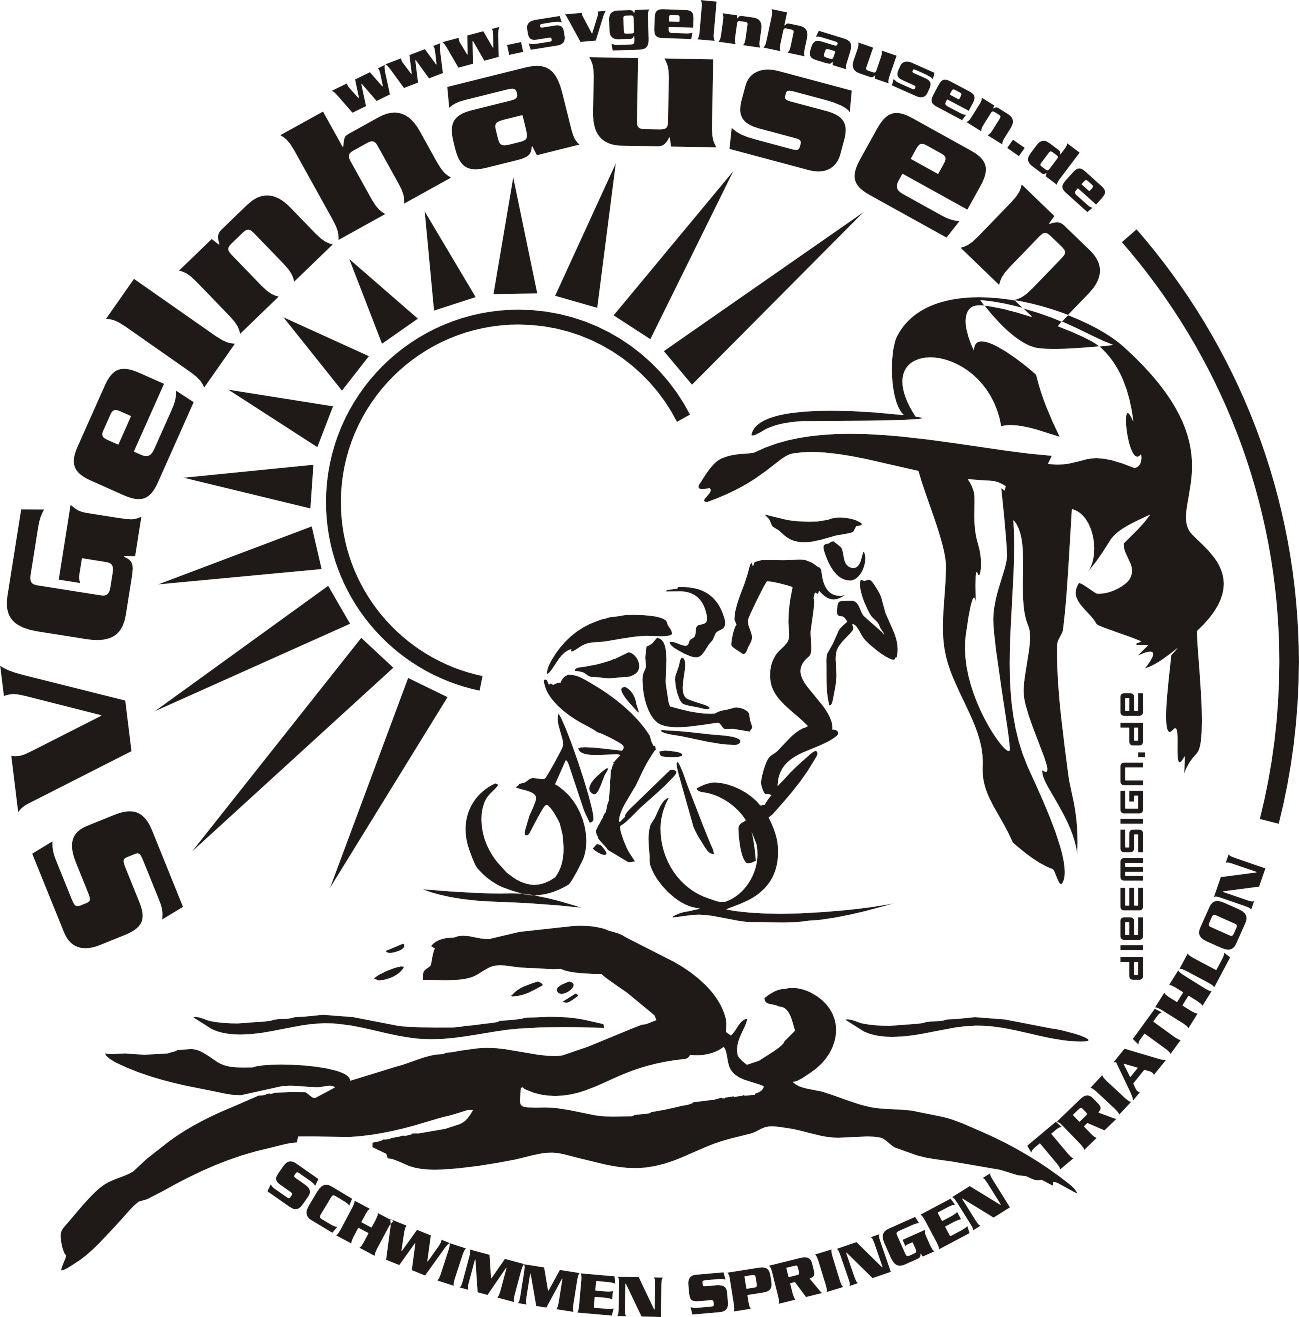 SV Gelnhausen Logo